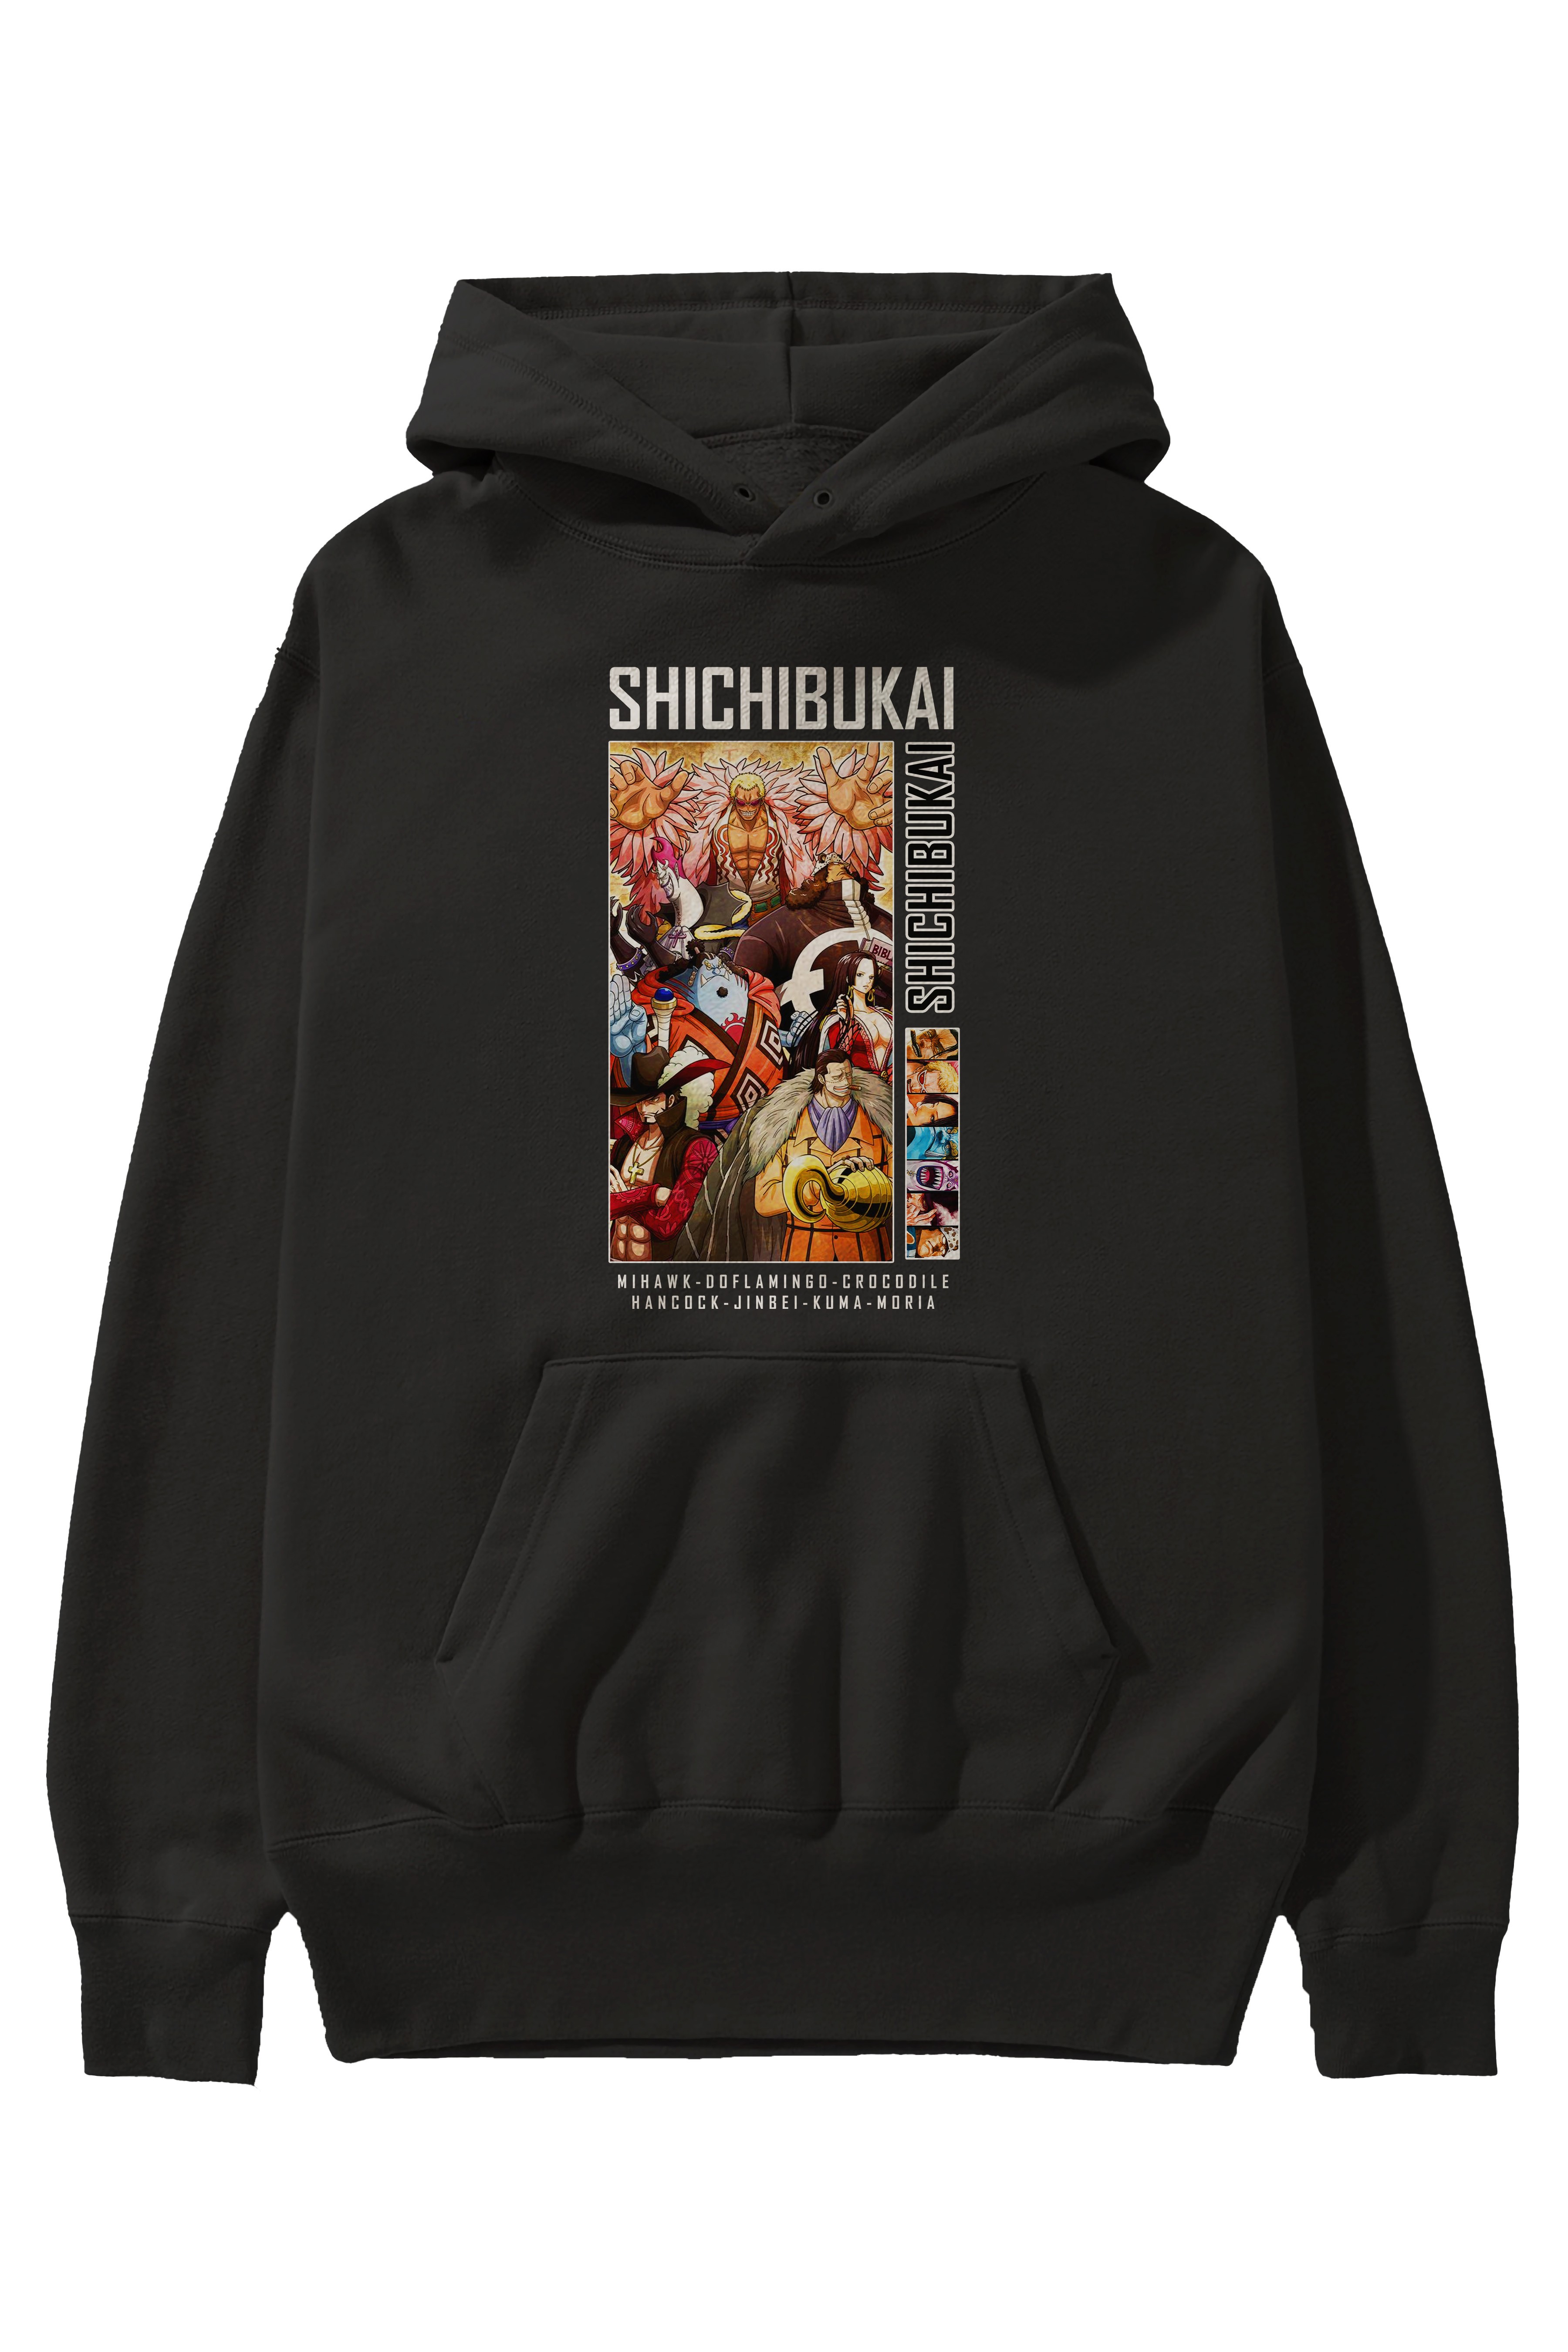 Shichibukai Anime Ön Baskılı Hoodie Oversize Kapüşonlu Sweatshirt Erkek Kadın Unisex